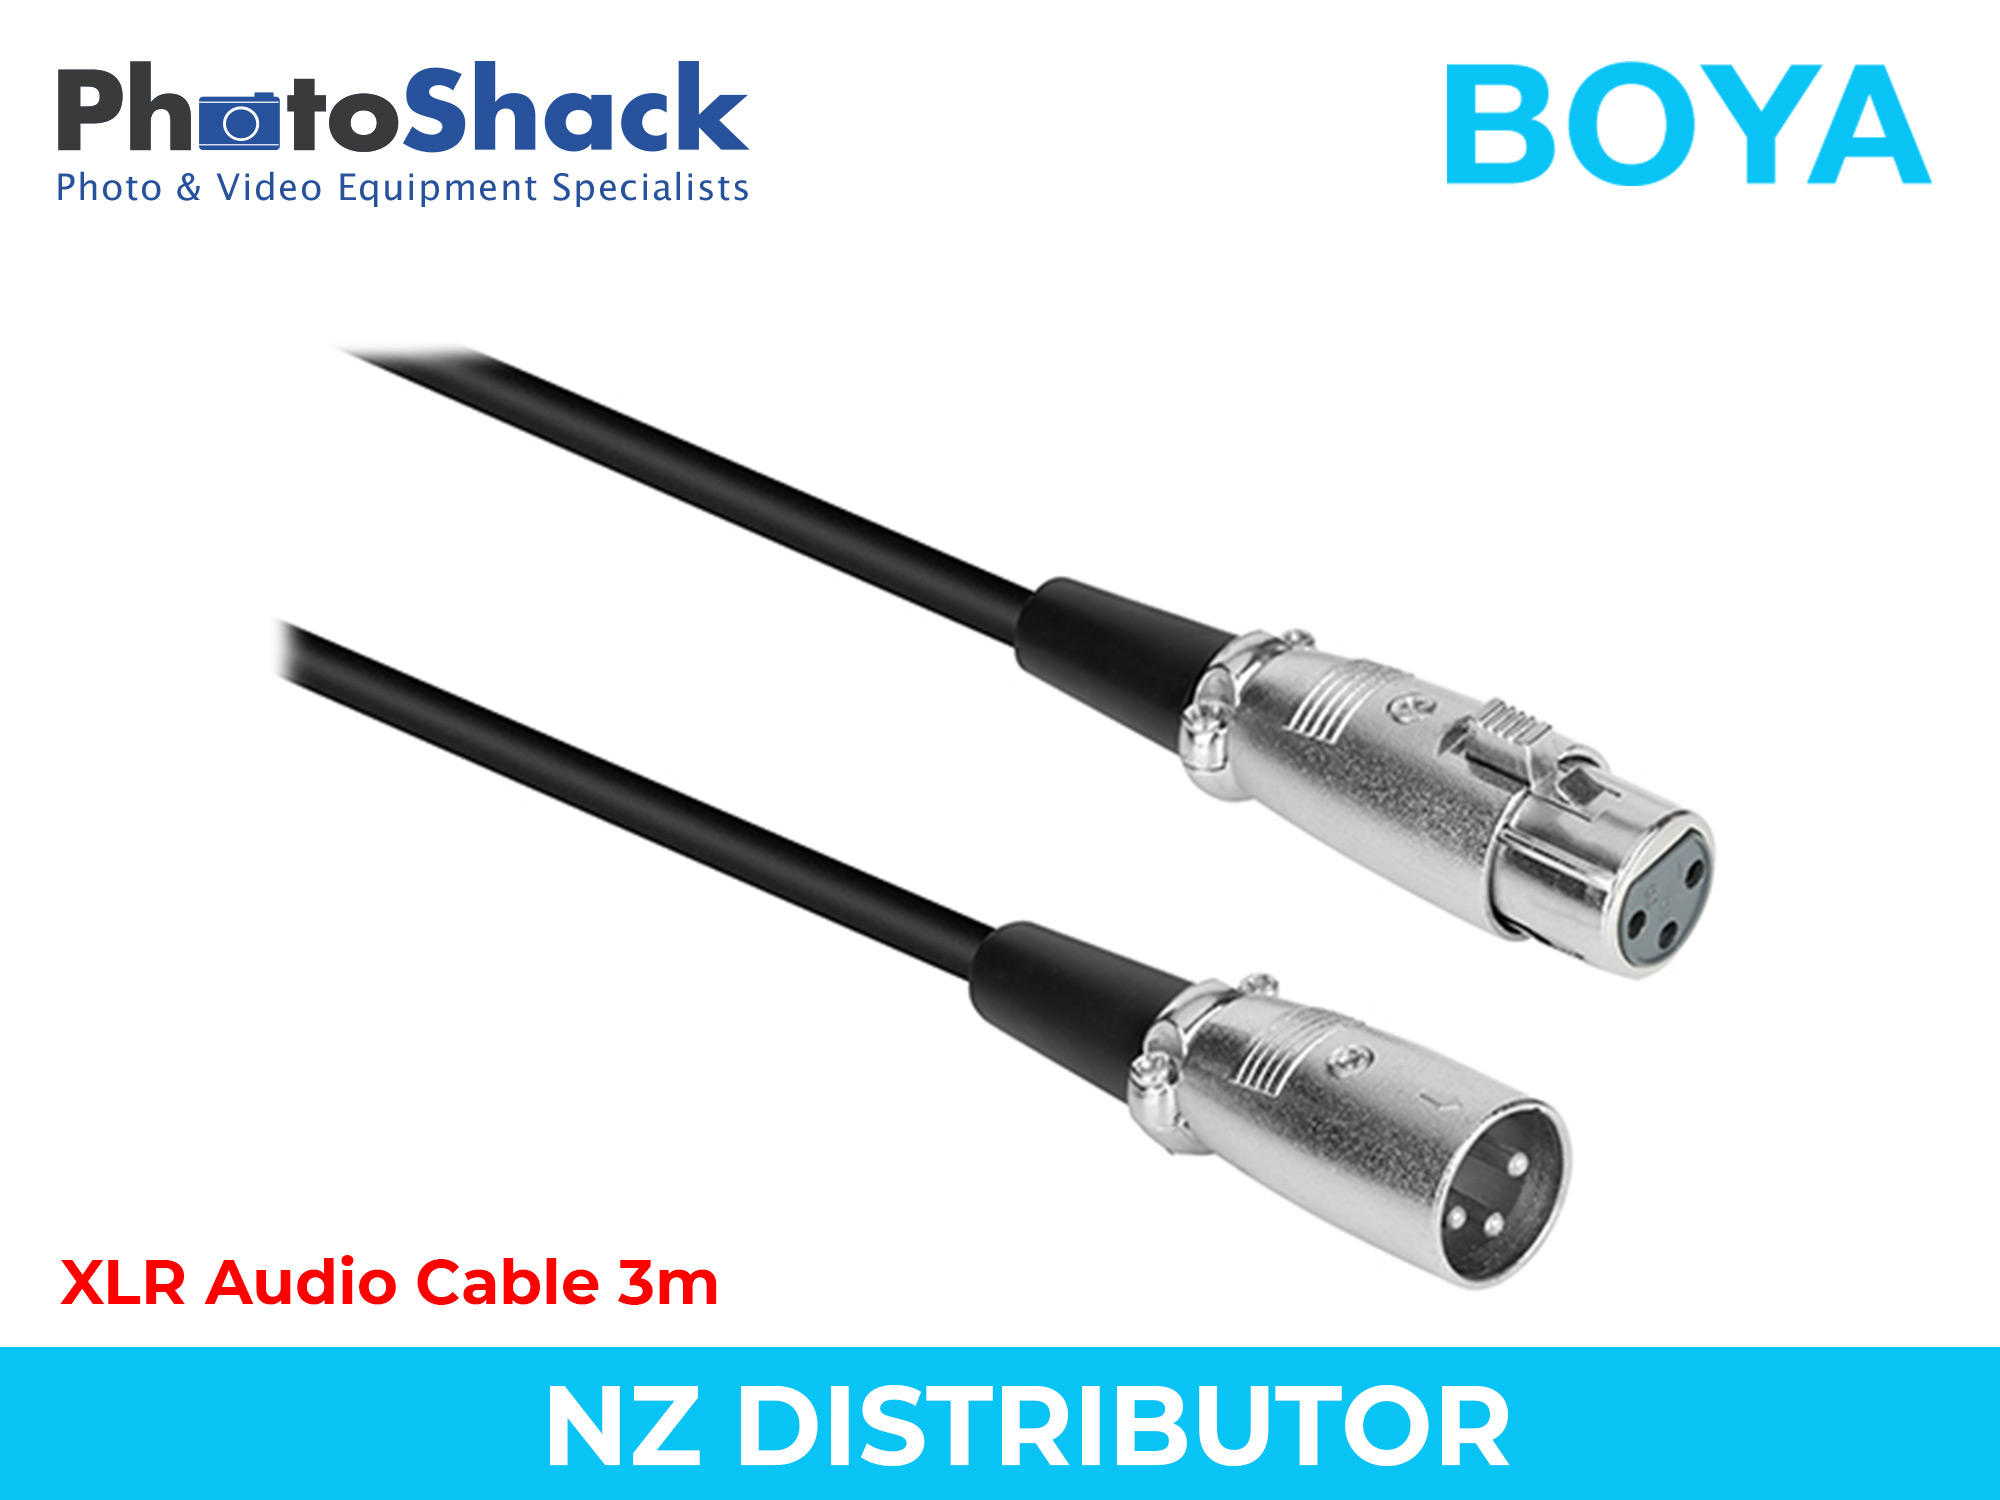 Boya XLR Audio Cable 3m